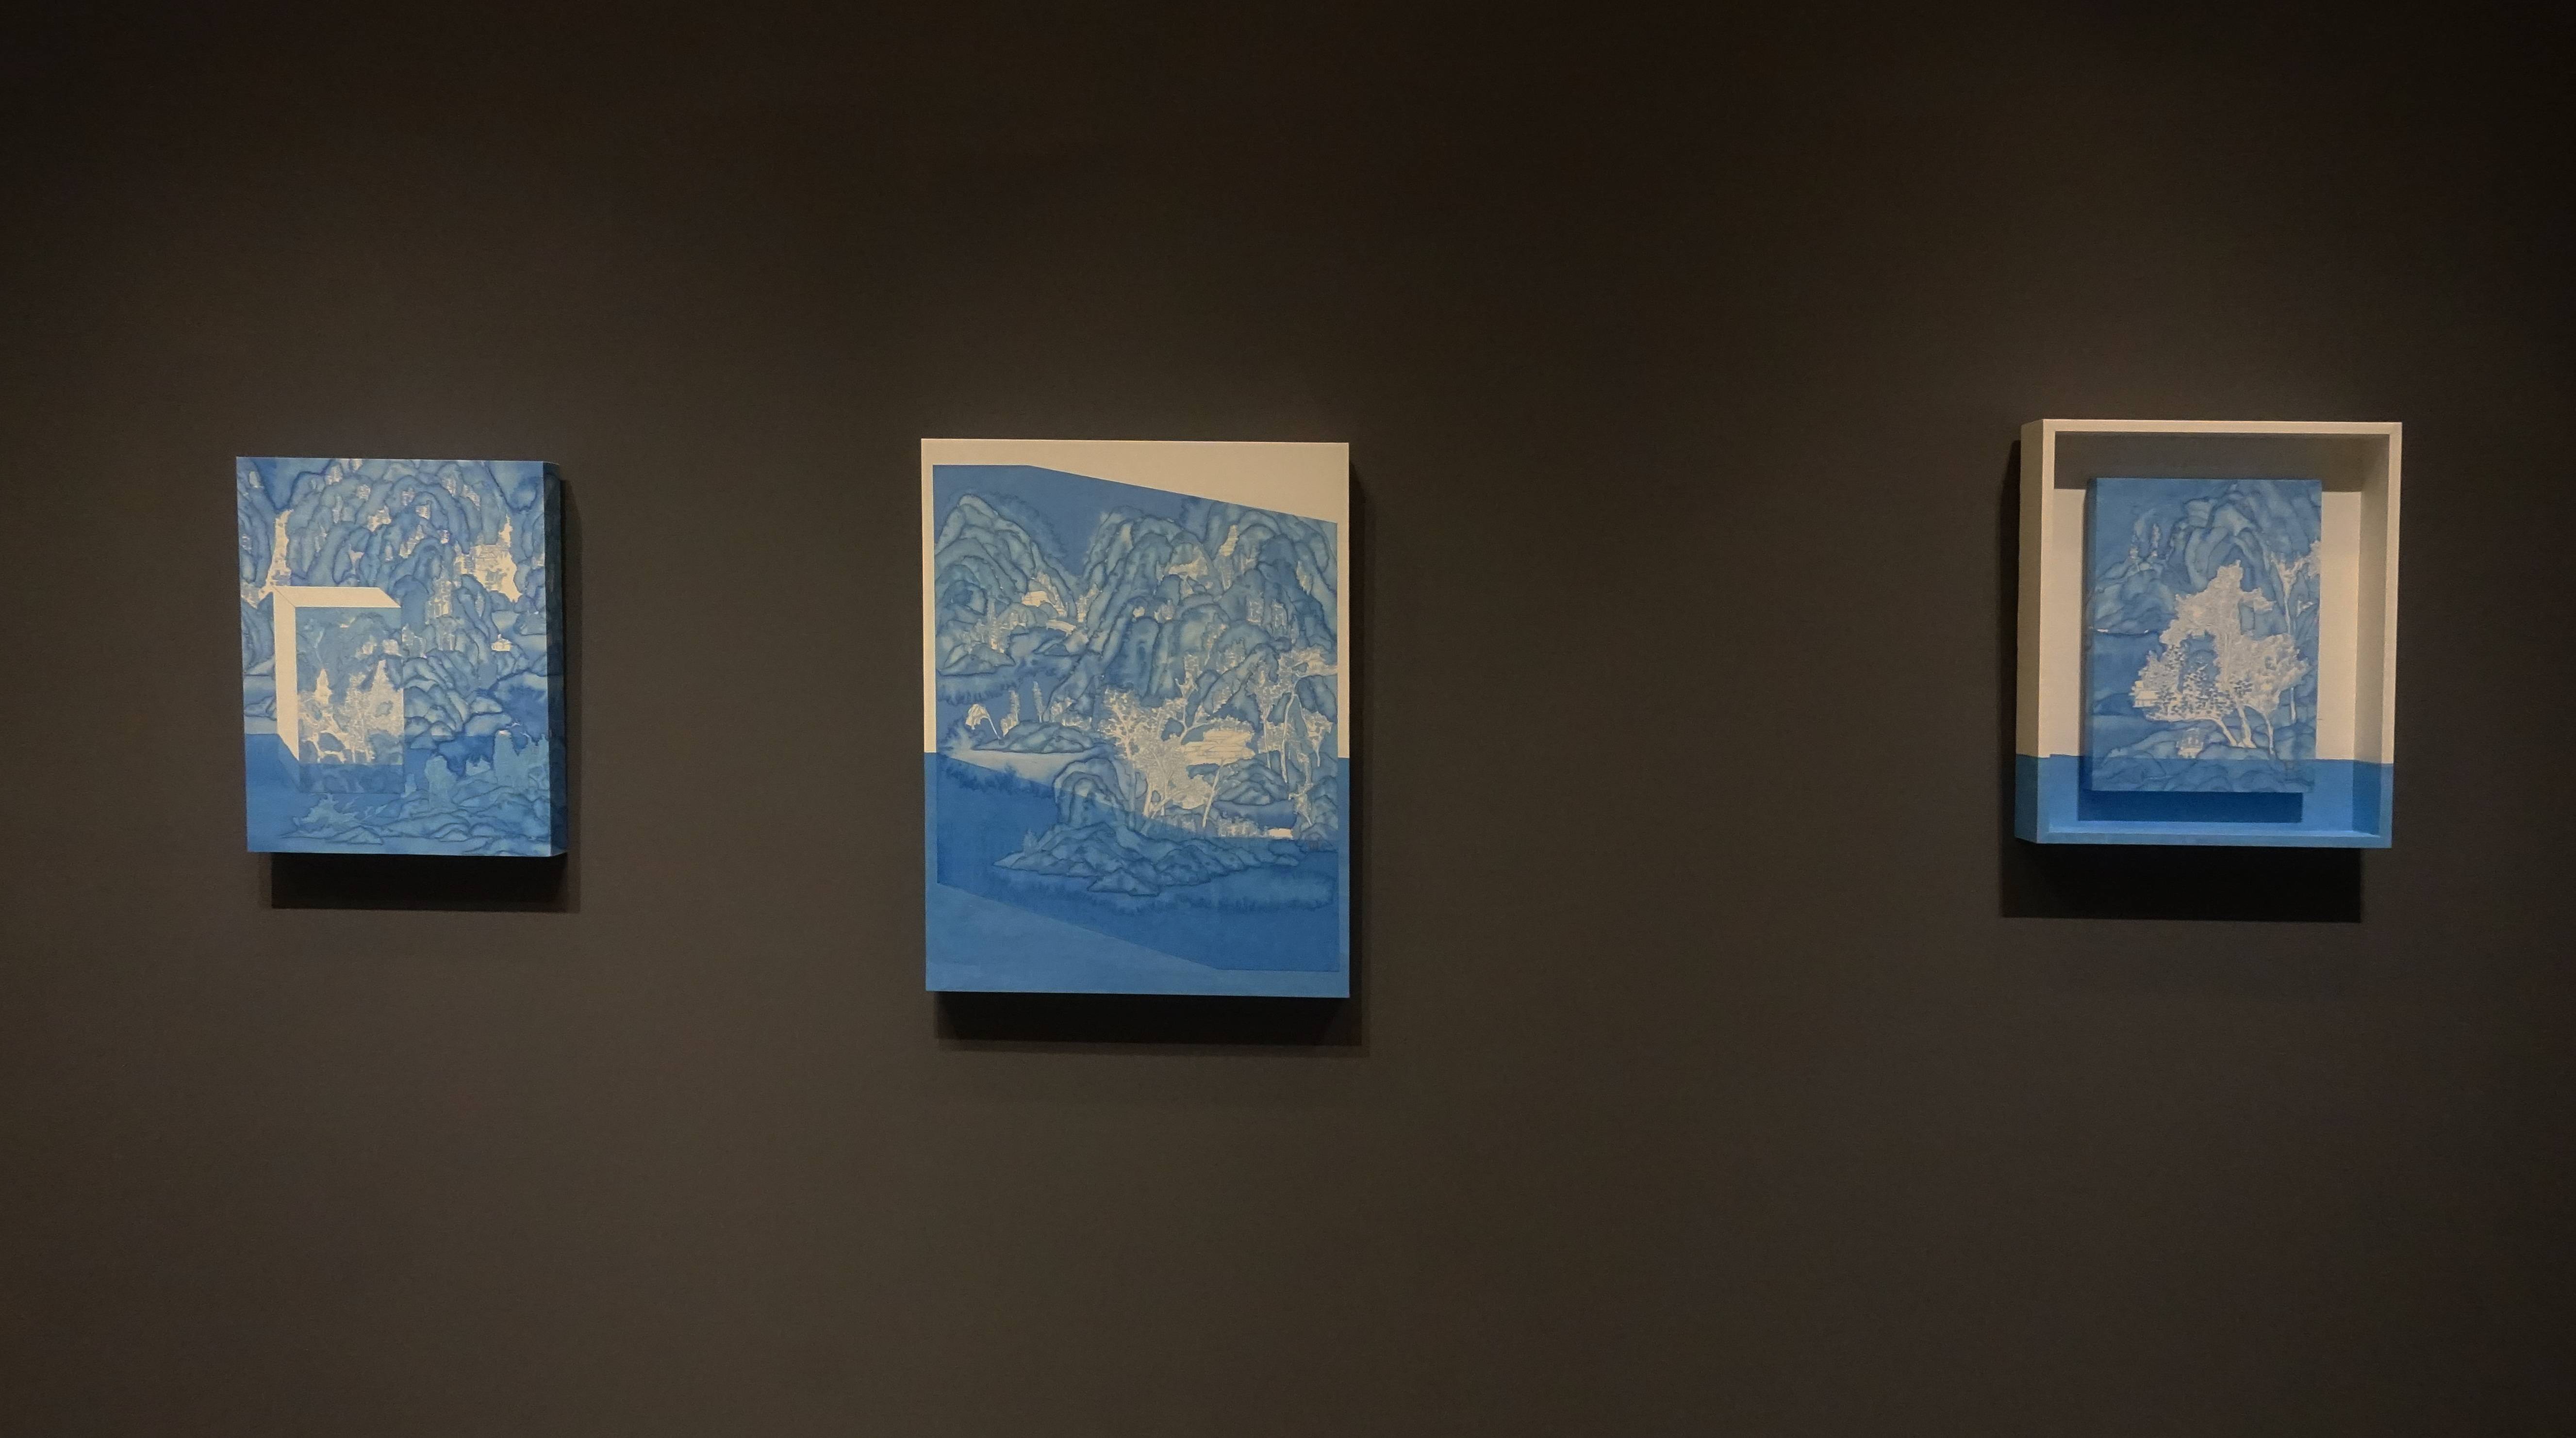 「藍心之物—李婷婷台灣首個展」於大觀藝術空間一樓展覽一隅。